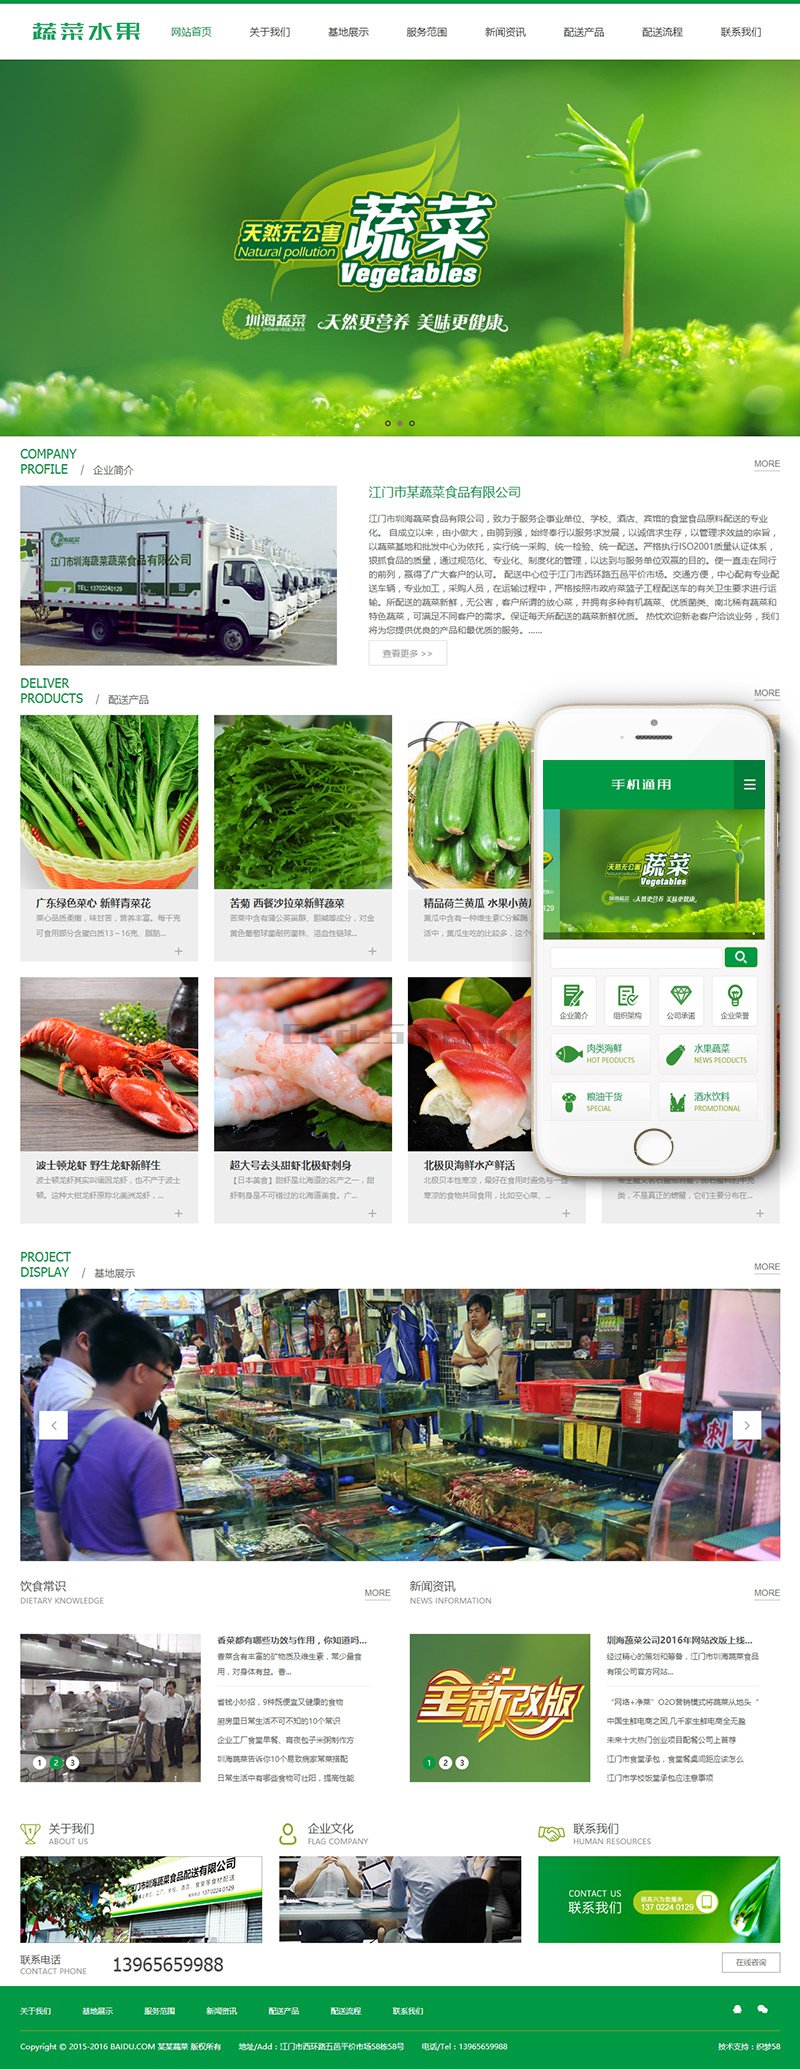 织梦源码绿色蔬菜水果产品类网站织梦源码模板(带手机端)品类-蔬菜水果-下载群